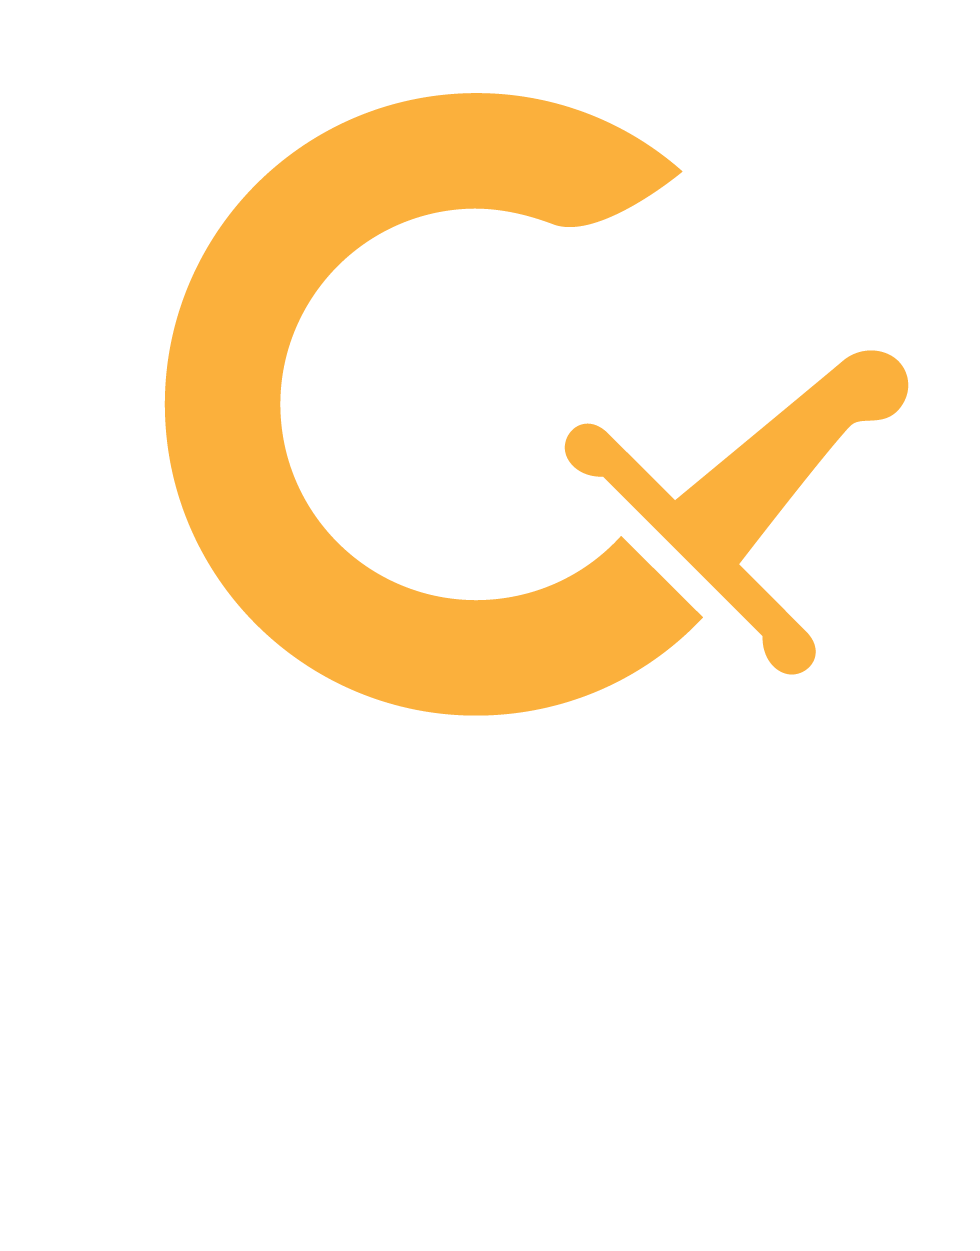 Cossack Labs logo, â€¦